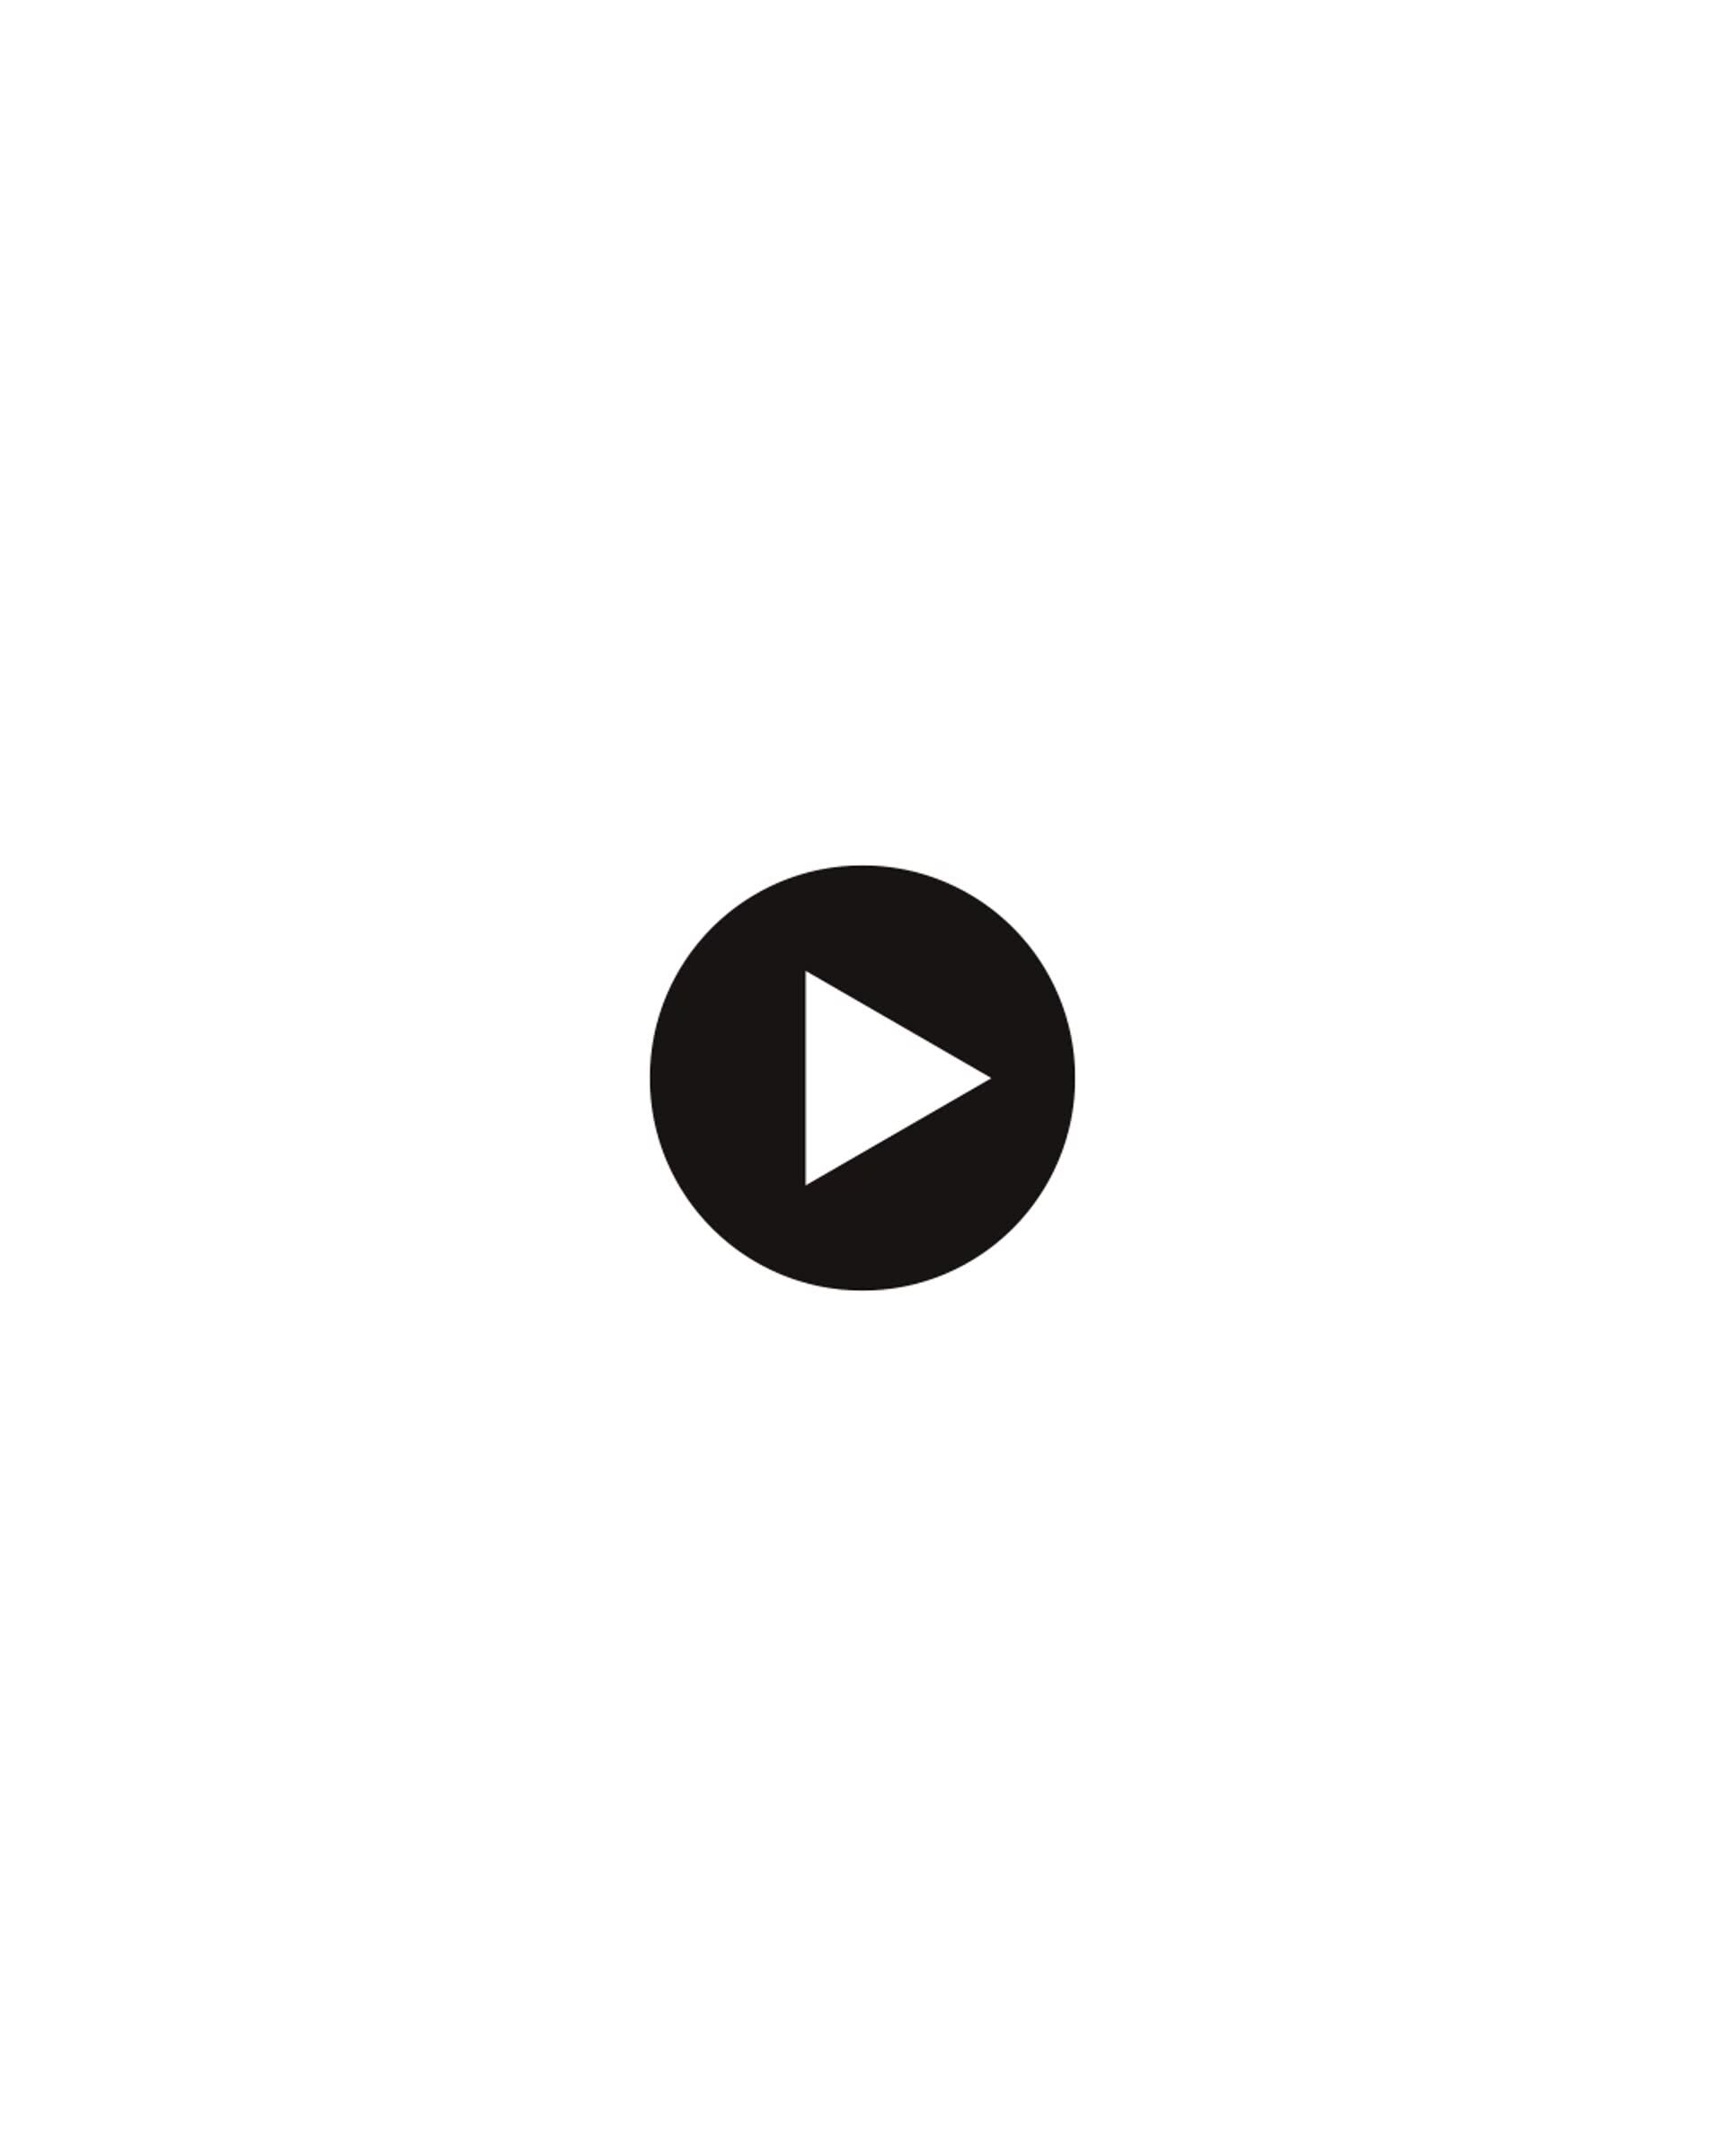 ArtStation - Spotify Logo Animation